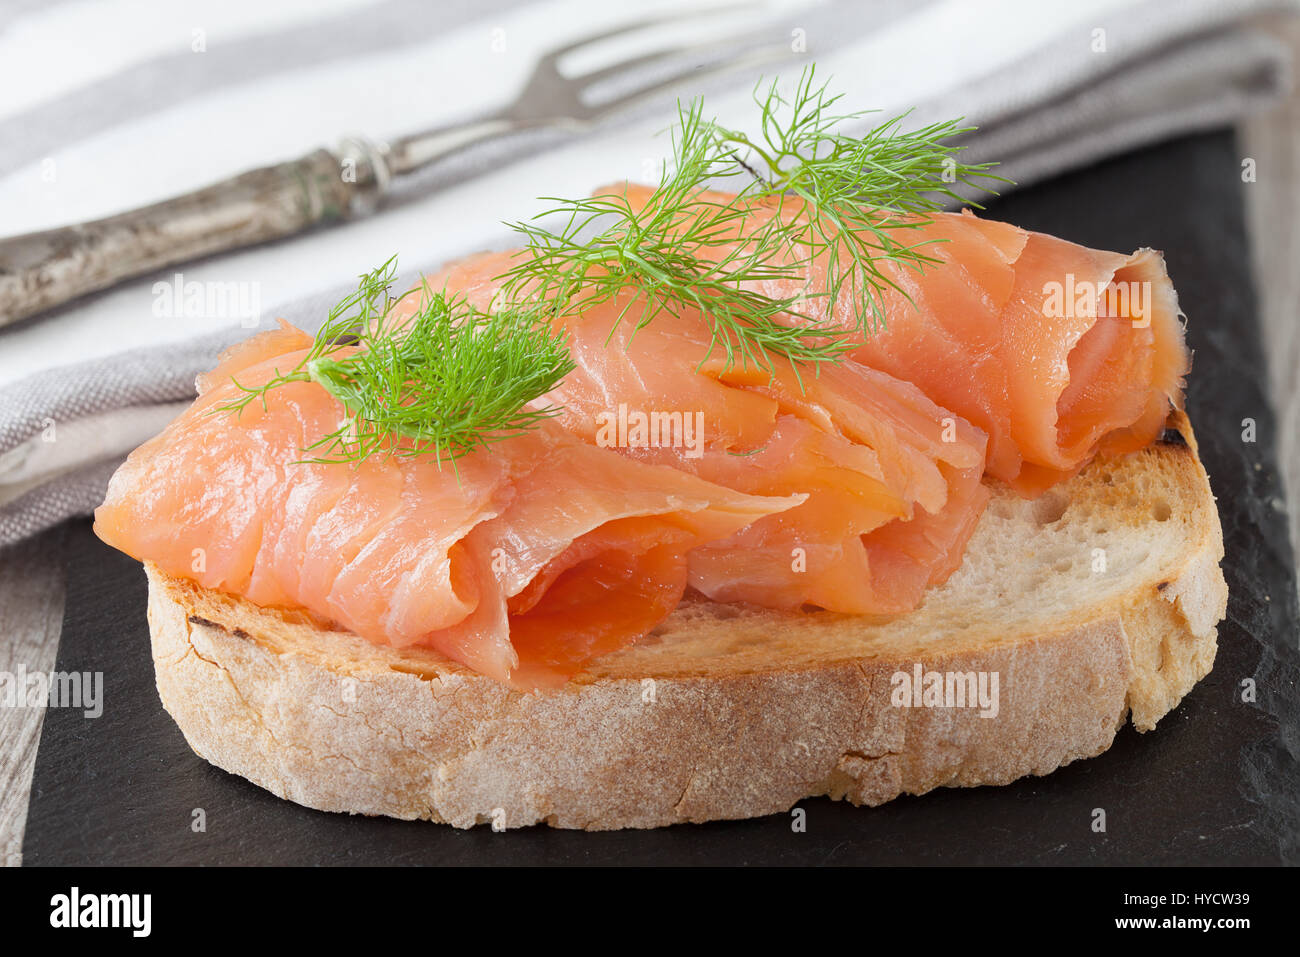 Salmone affumicato con aneto fresco sulla fetta di pane, nella luce naturale, autentico cibo. Foto Stock